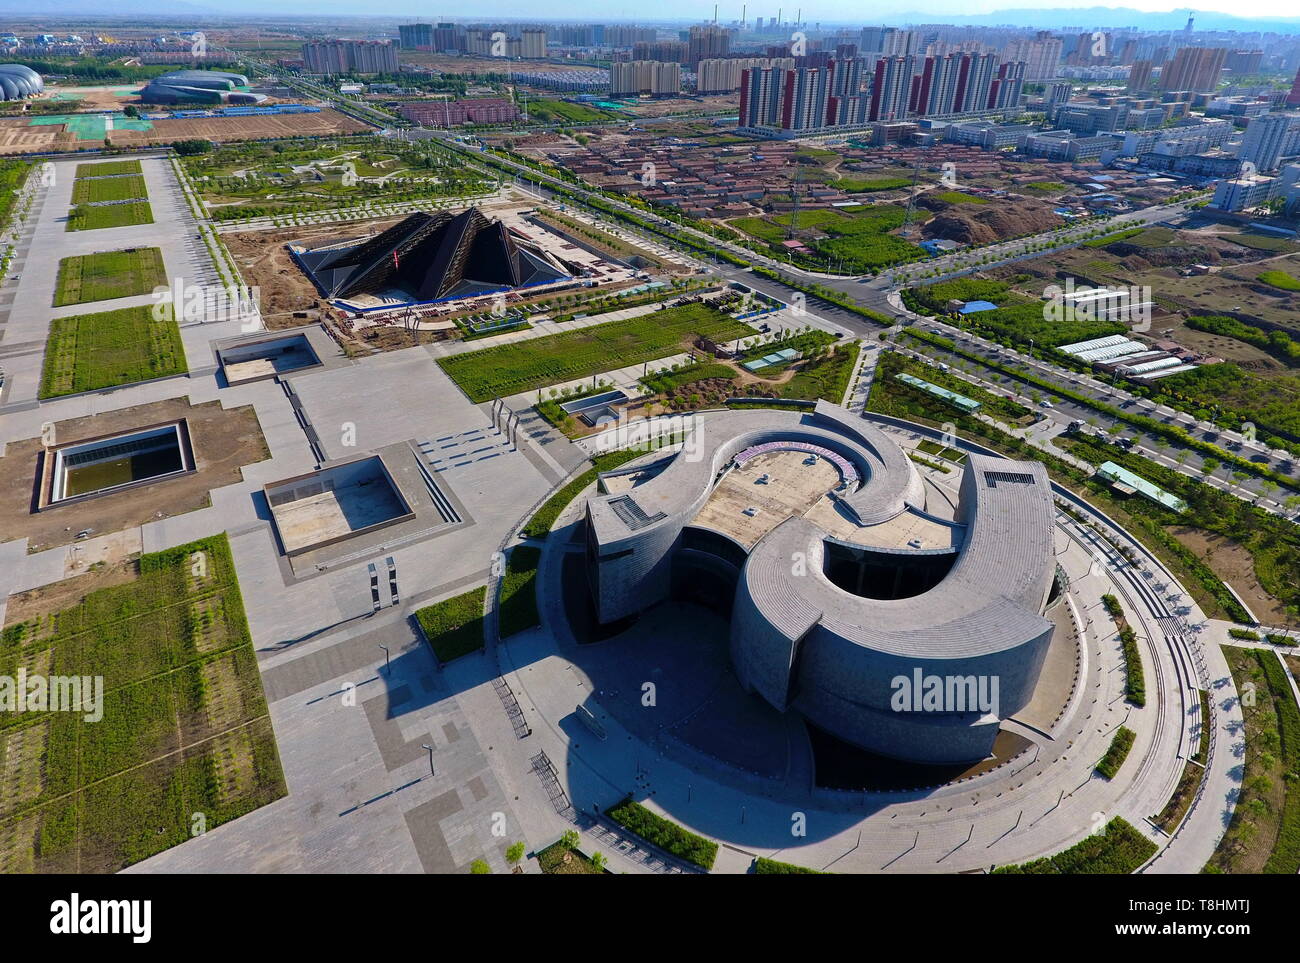 (190513) -- Pechino, 13 maggio 2019 (Xinhua) -- foto aerea adottate il 17 Maggio 2017 mostra una vista di Datong, nel nord della Cina di nella provincia di Shanxi. Il 'Giorno hanxi 'tema evento tenutosi come parte del Beijing International mostra ortoculturale calci fuori a Pechino il 12 maggio. Il giardino dello Shanxi mette in mostra il suo impegno in greening e imboschimento come pure il suo concetto di sviluppo verde alla corso expo. Non è più fatto affidamento soprattutto sulla sua industria carboniera per la crescita, Shanxi è stata impegnata nello sviluppo di energia pulita e di altre industrie emergenti di trovare un equilibrio tra ambiente protectio Foto Stock